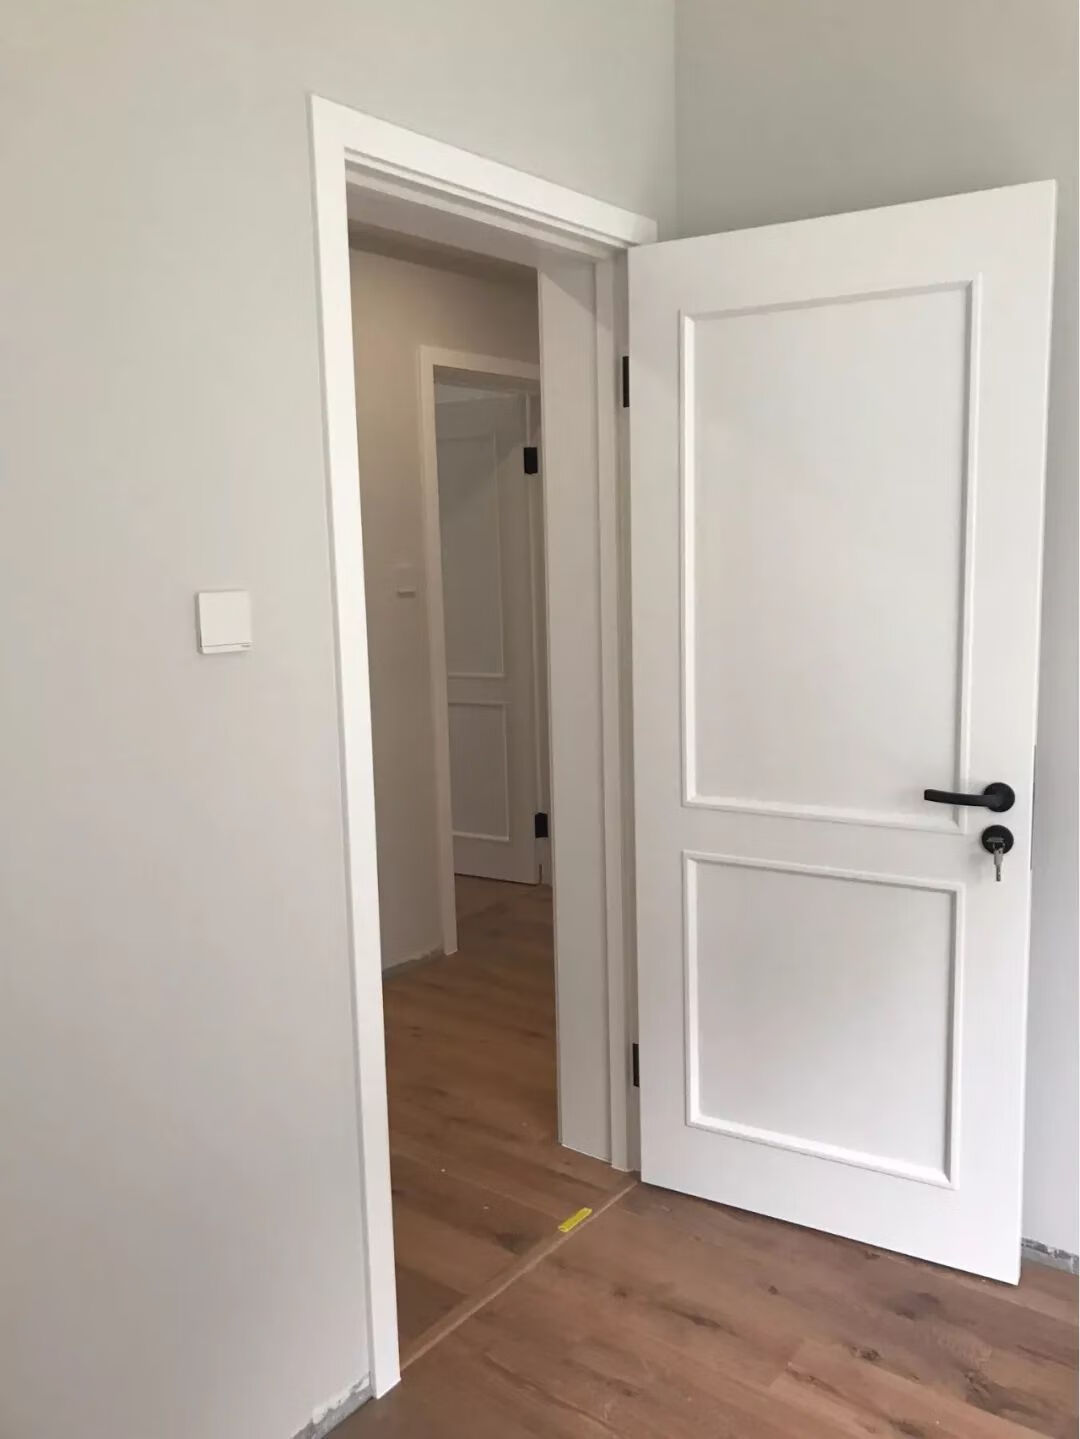 两间卧室门对门怎么办图片